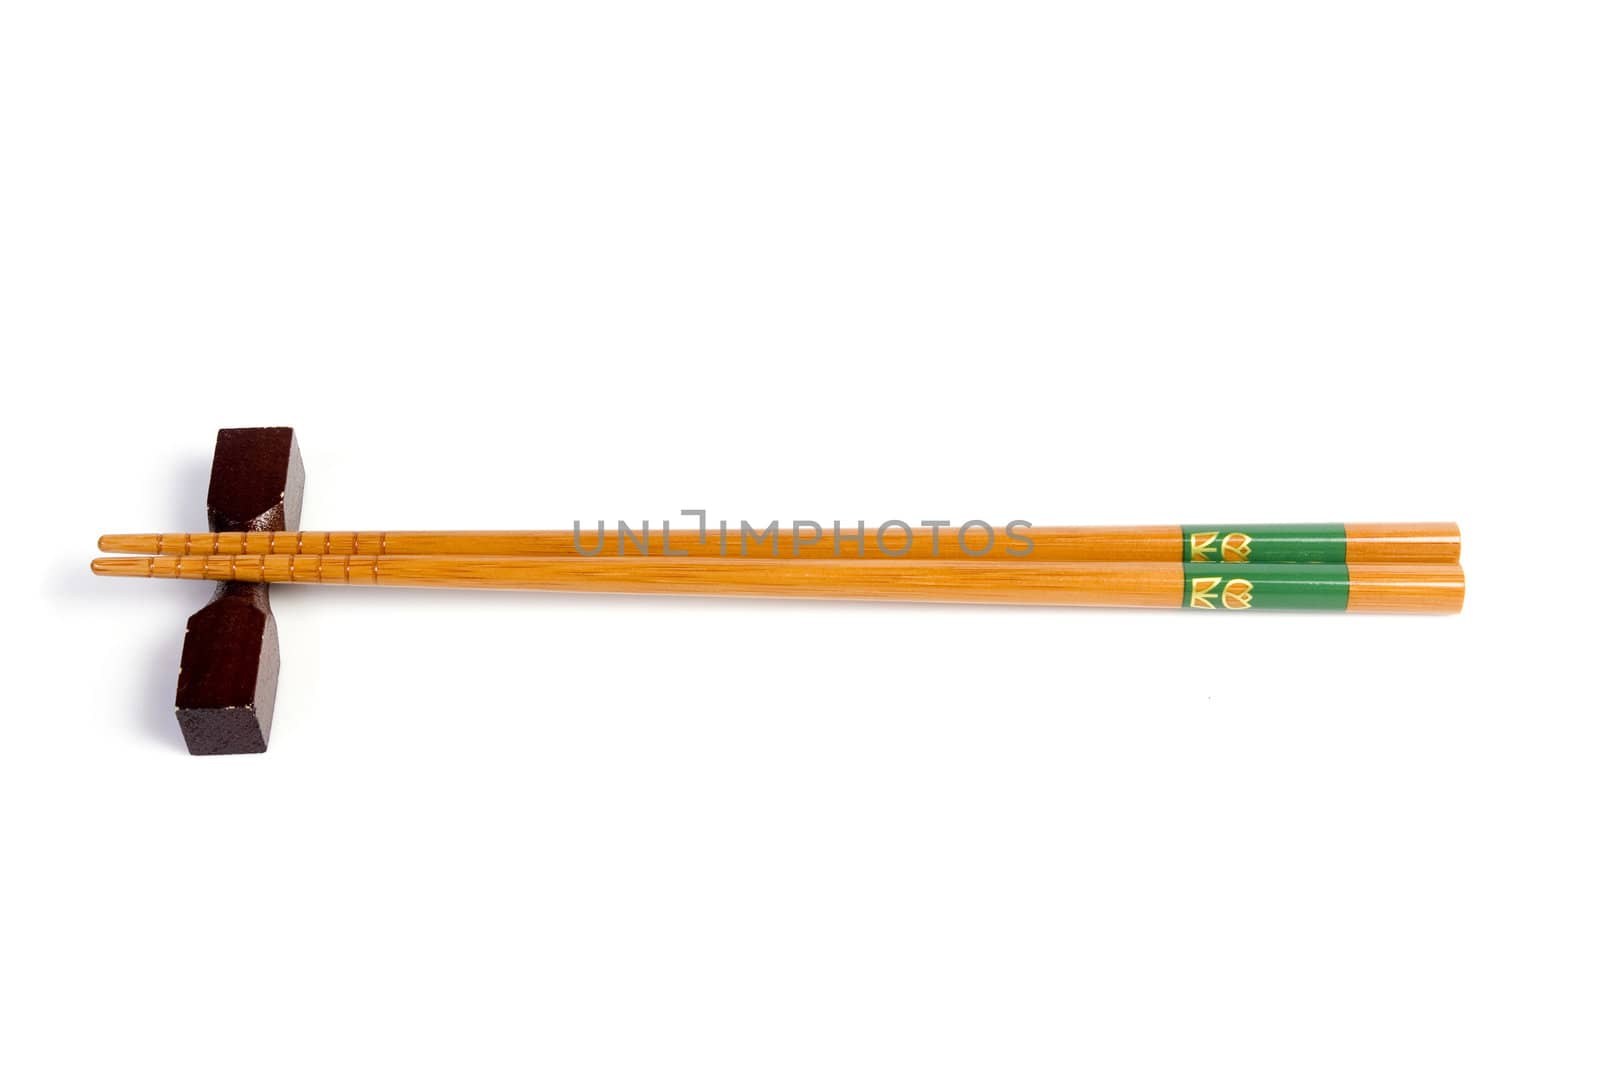 Chopsticks - japanese kitchen utensil by posterize